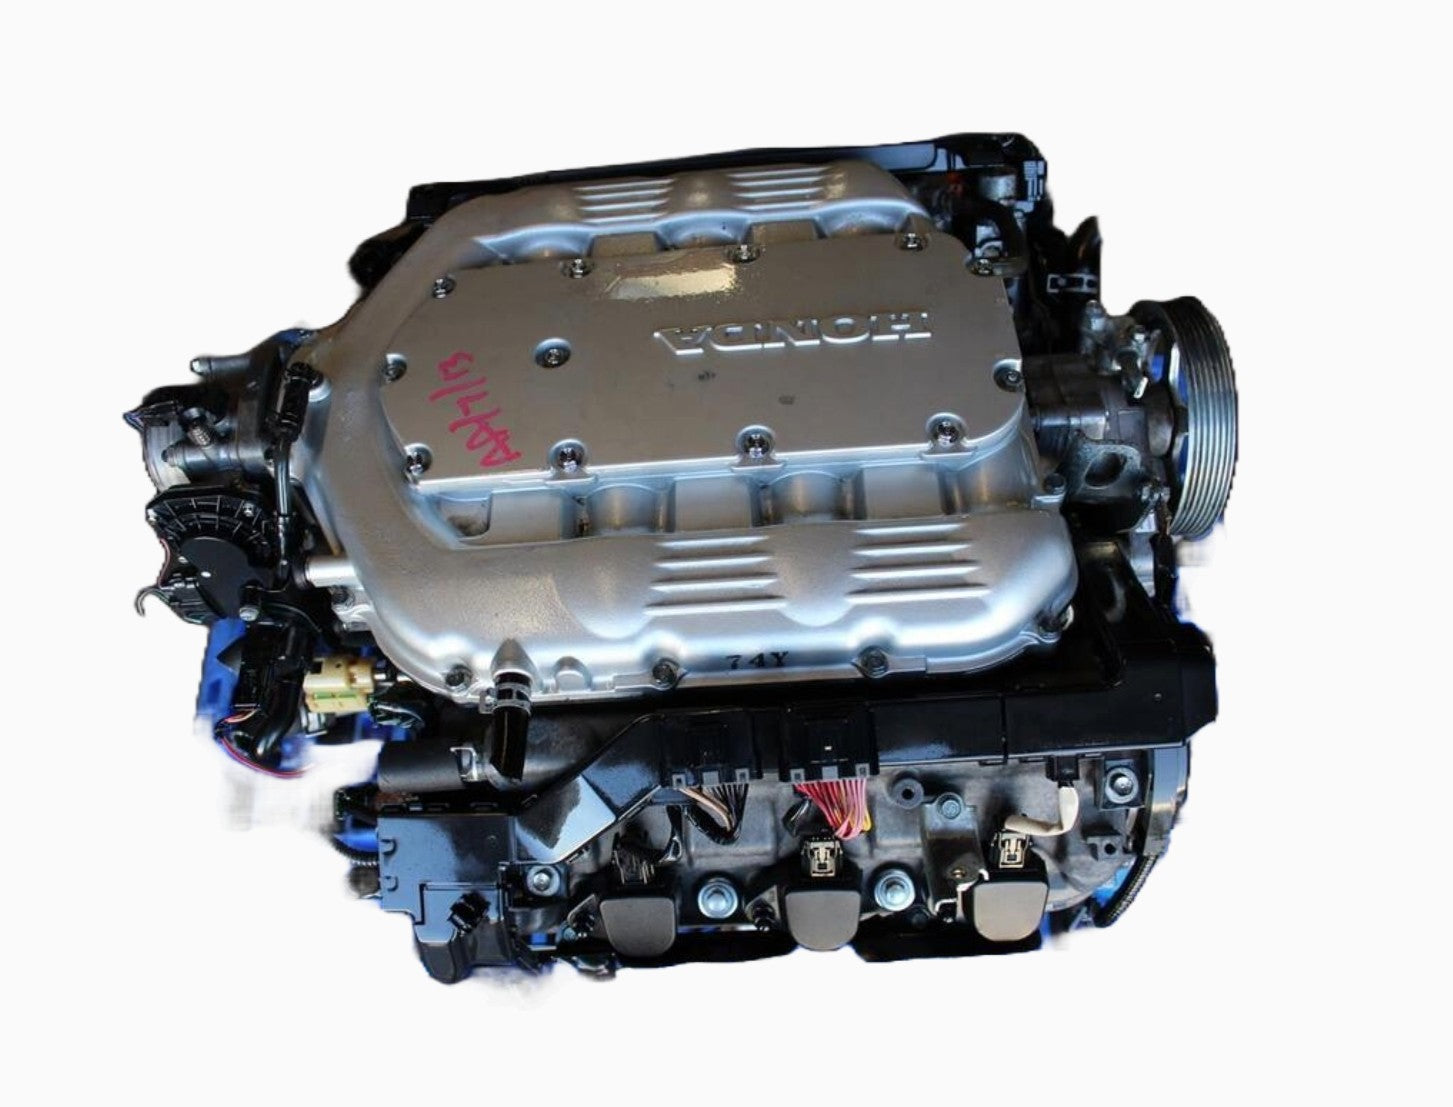 Honda Pilot 3.5L V6 engines 2006 to 2008